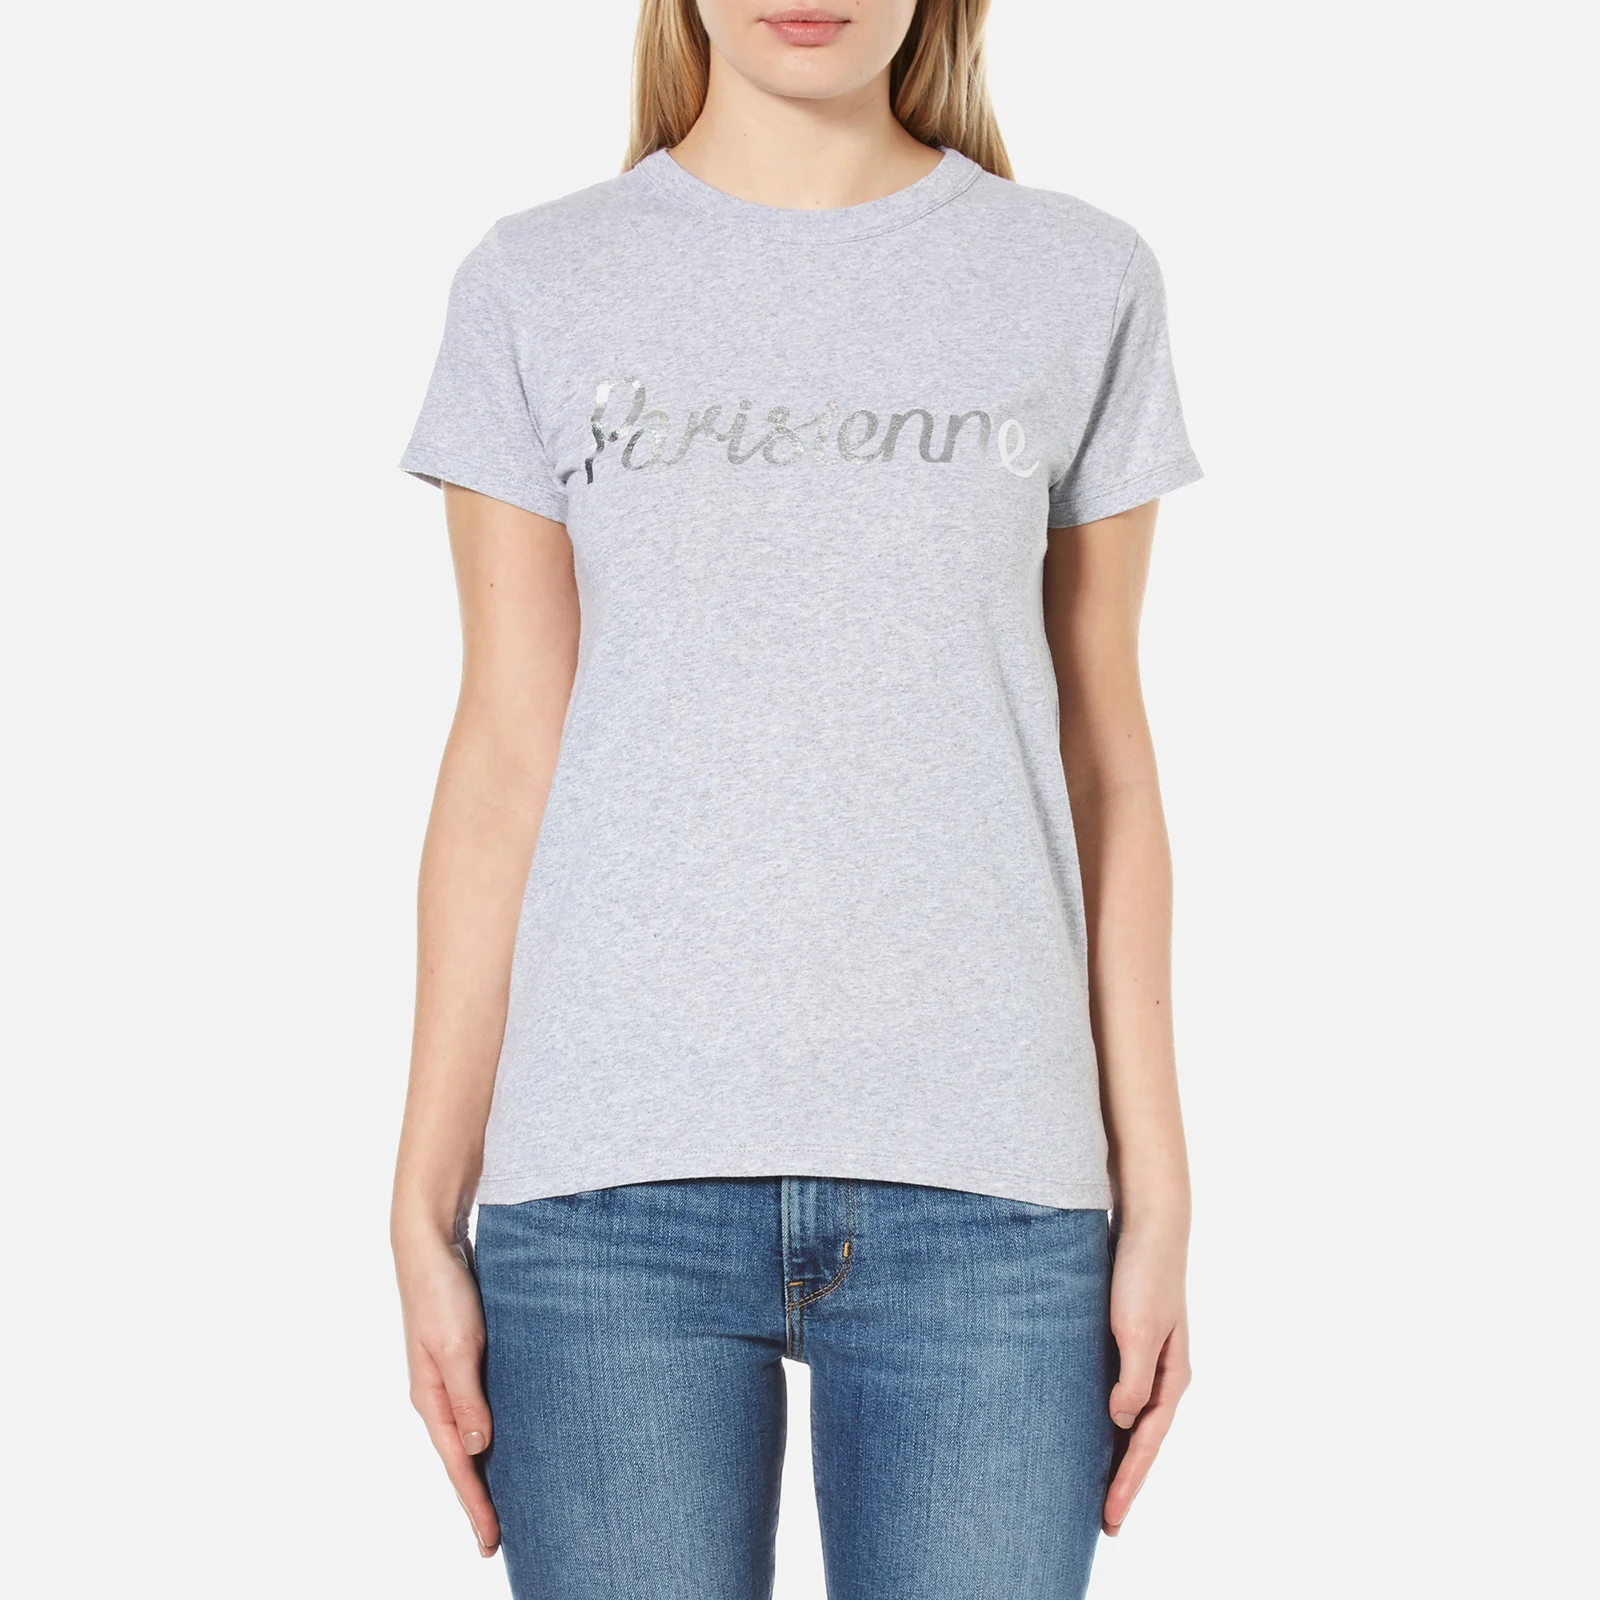 Maison Kitsuné Women's Parisienne T-Shirt - Light Grey Melange Image 1